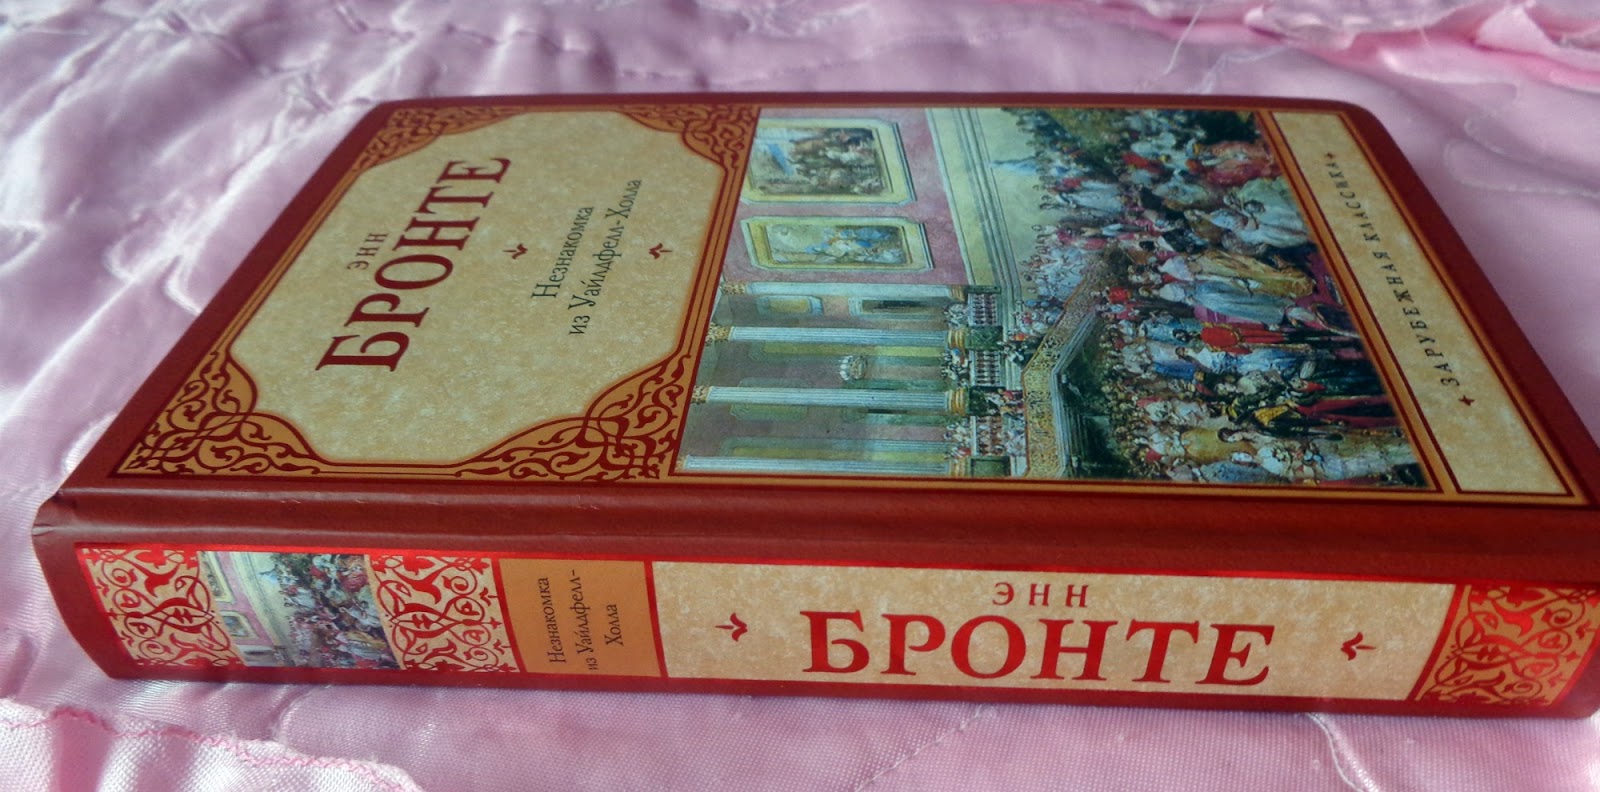 Книга за 1 рубль